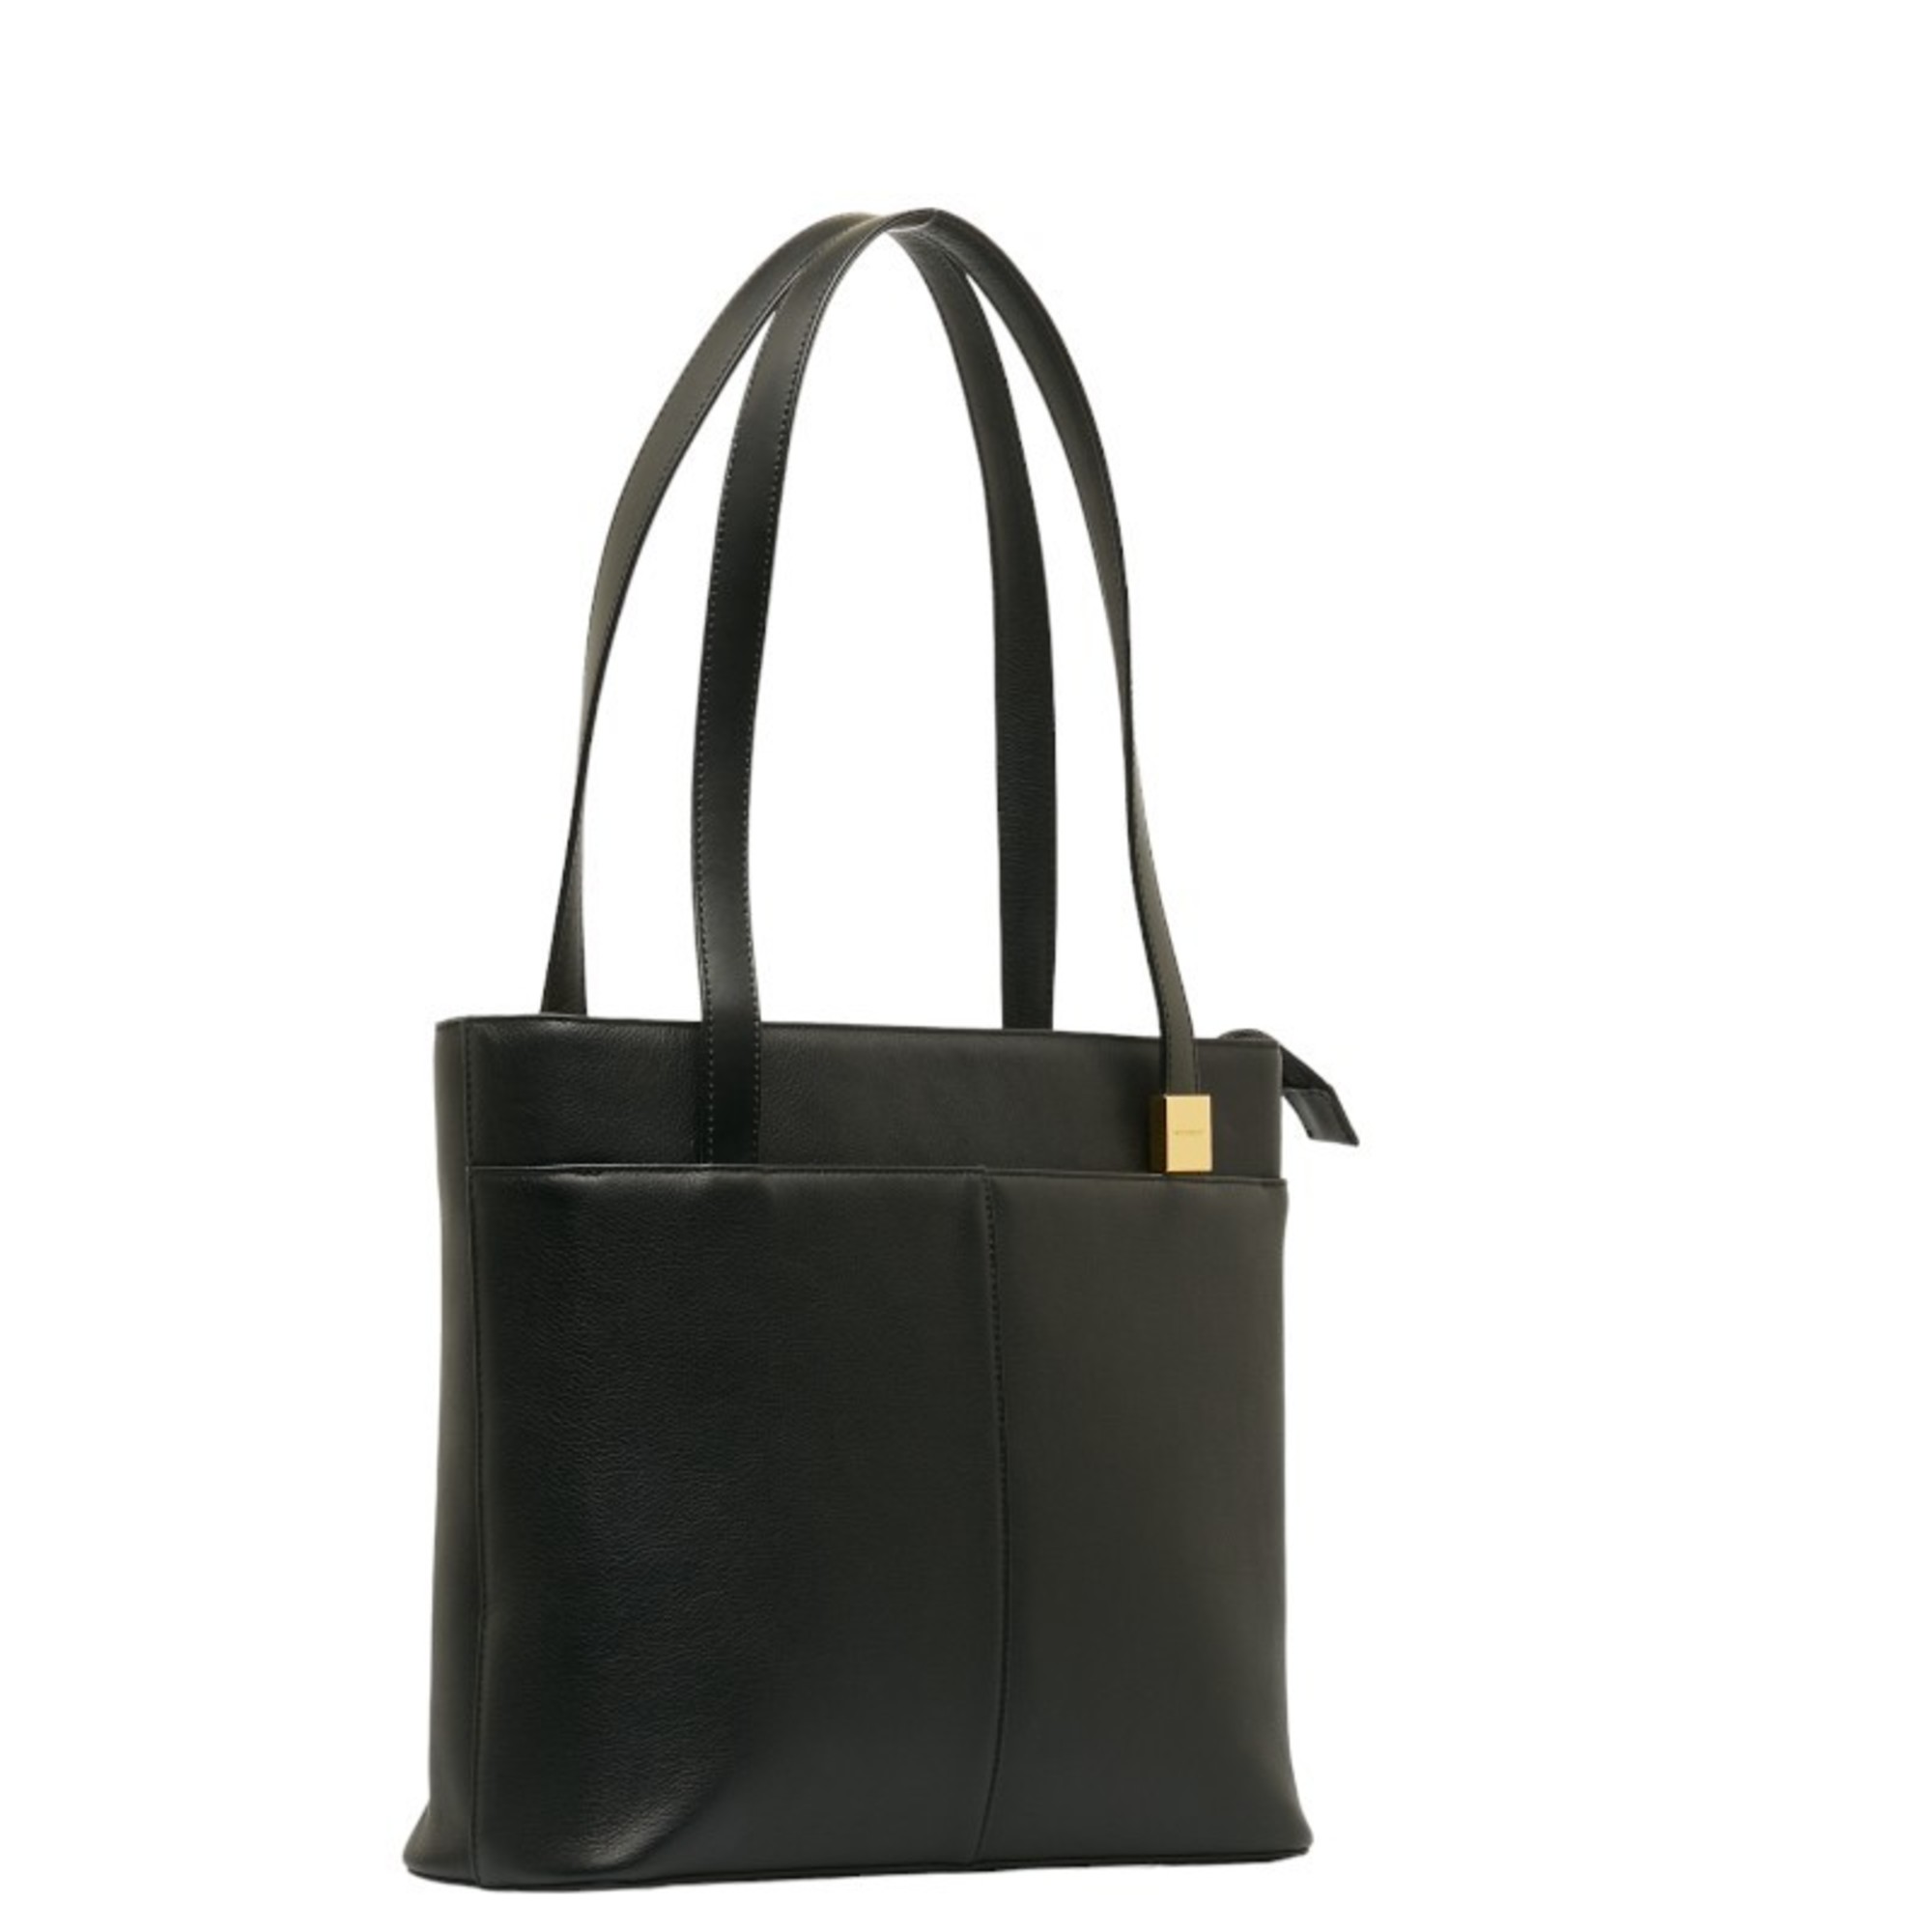 Burberry Nova Check Tote Bag Handbag Black Leather Women's BURBERRY